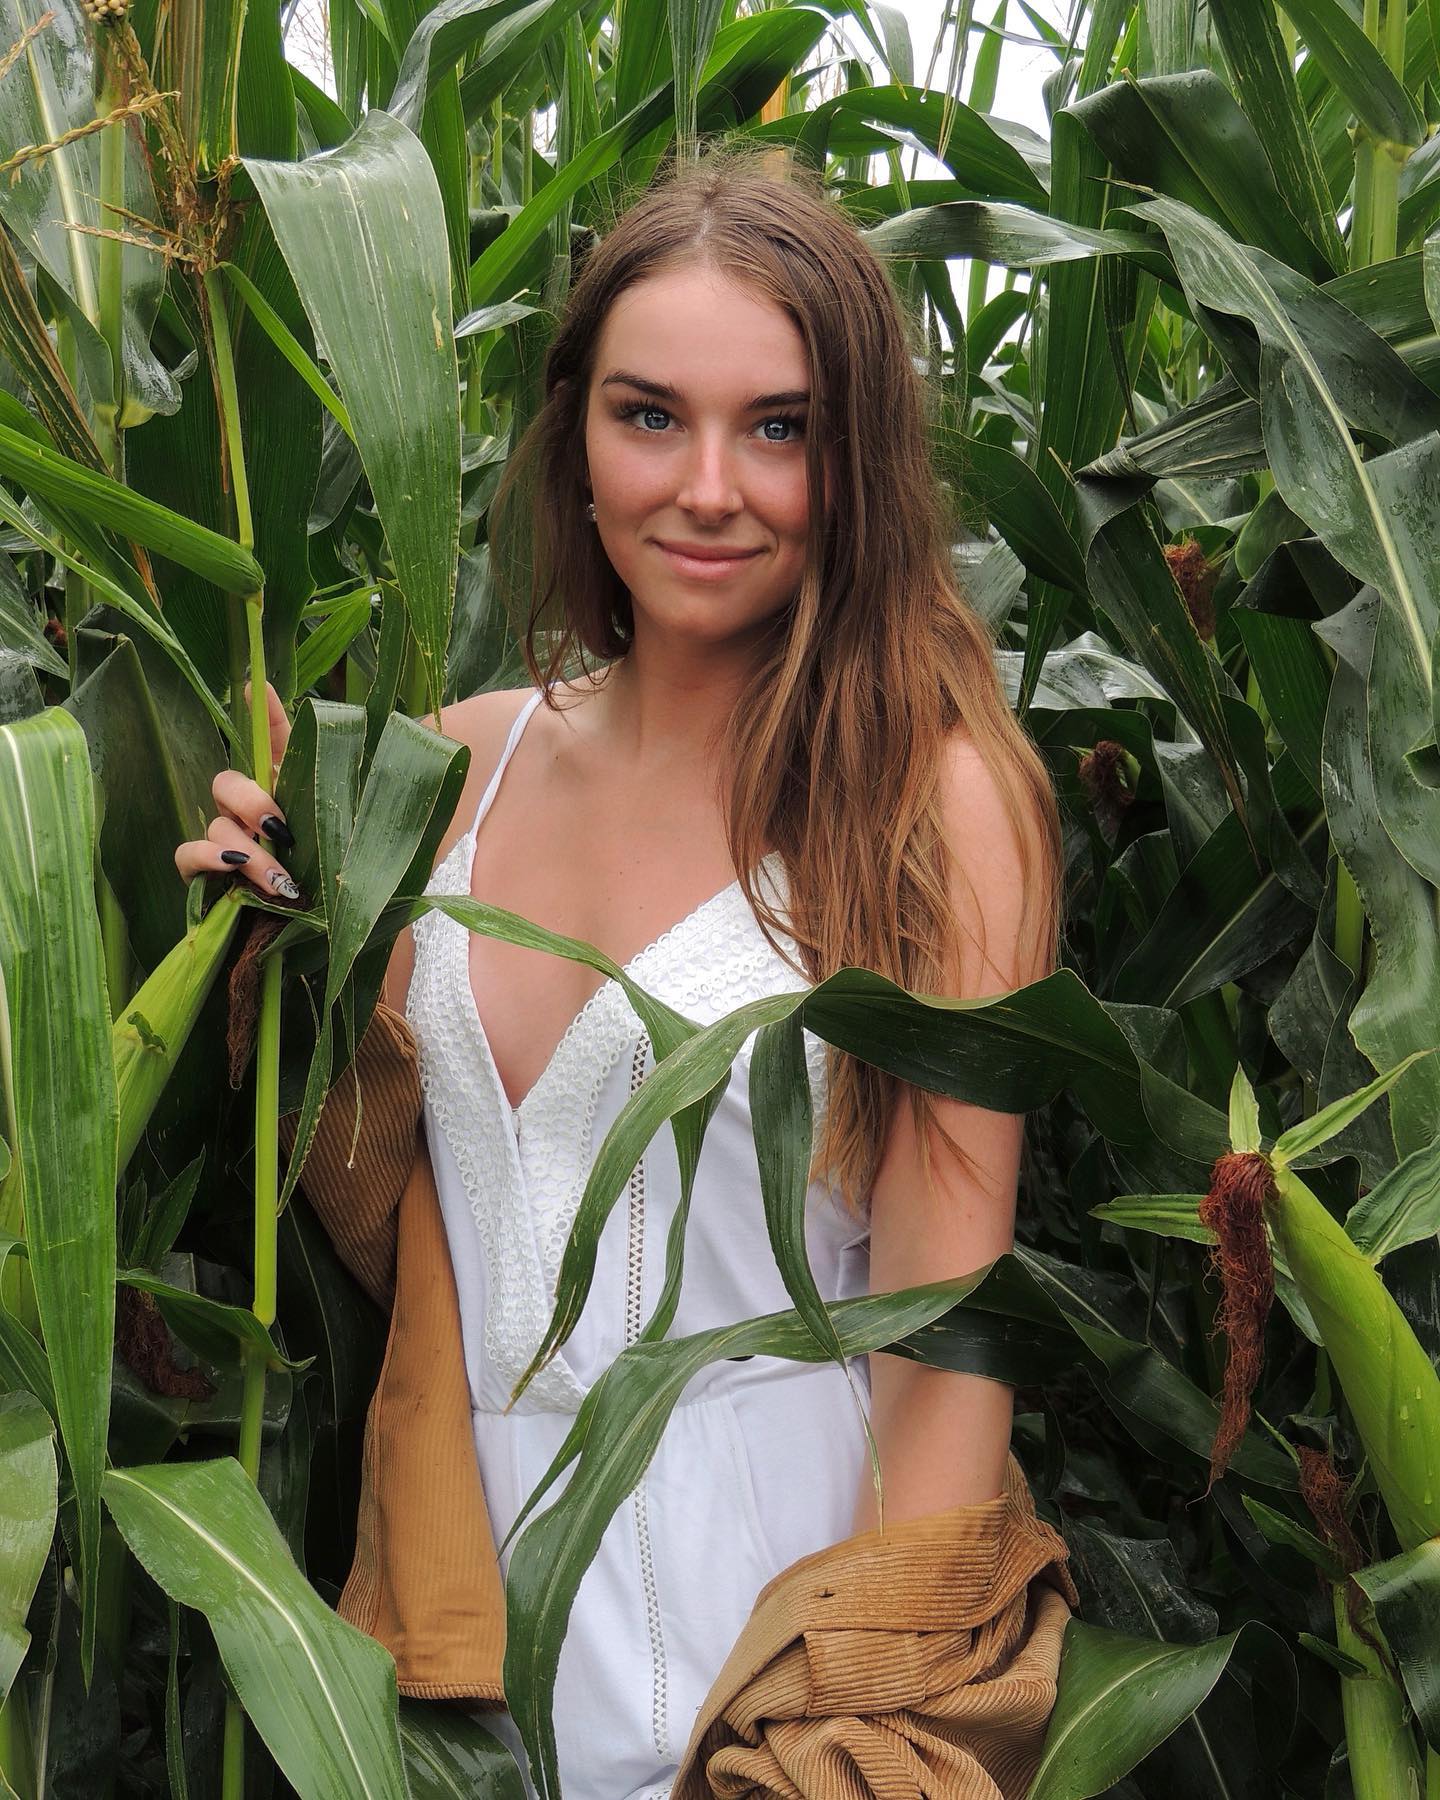 corn field Scrolller